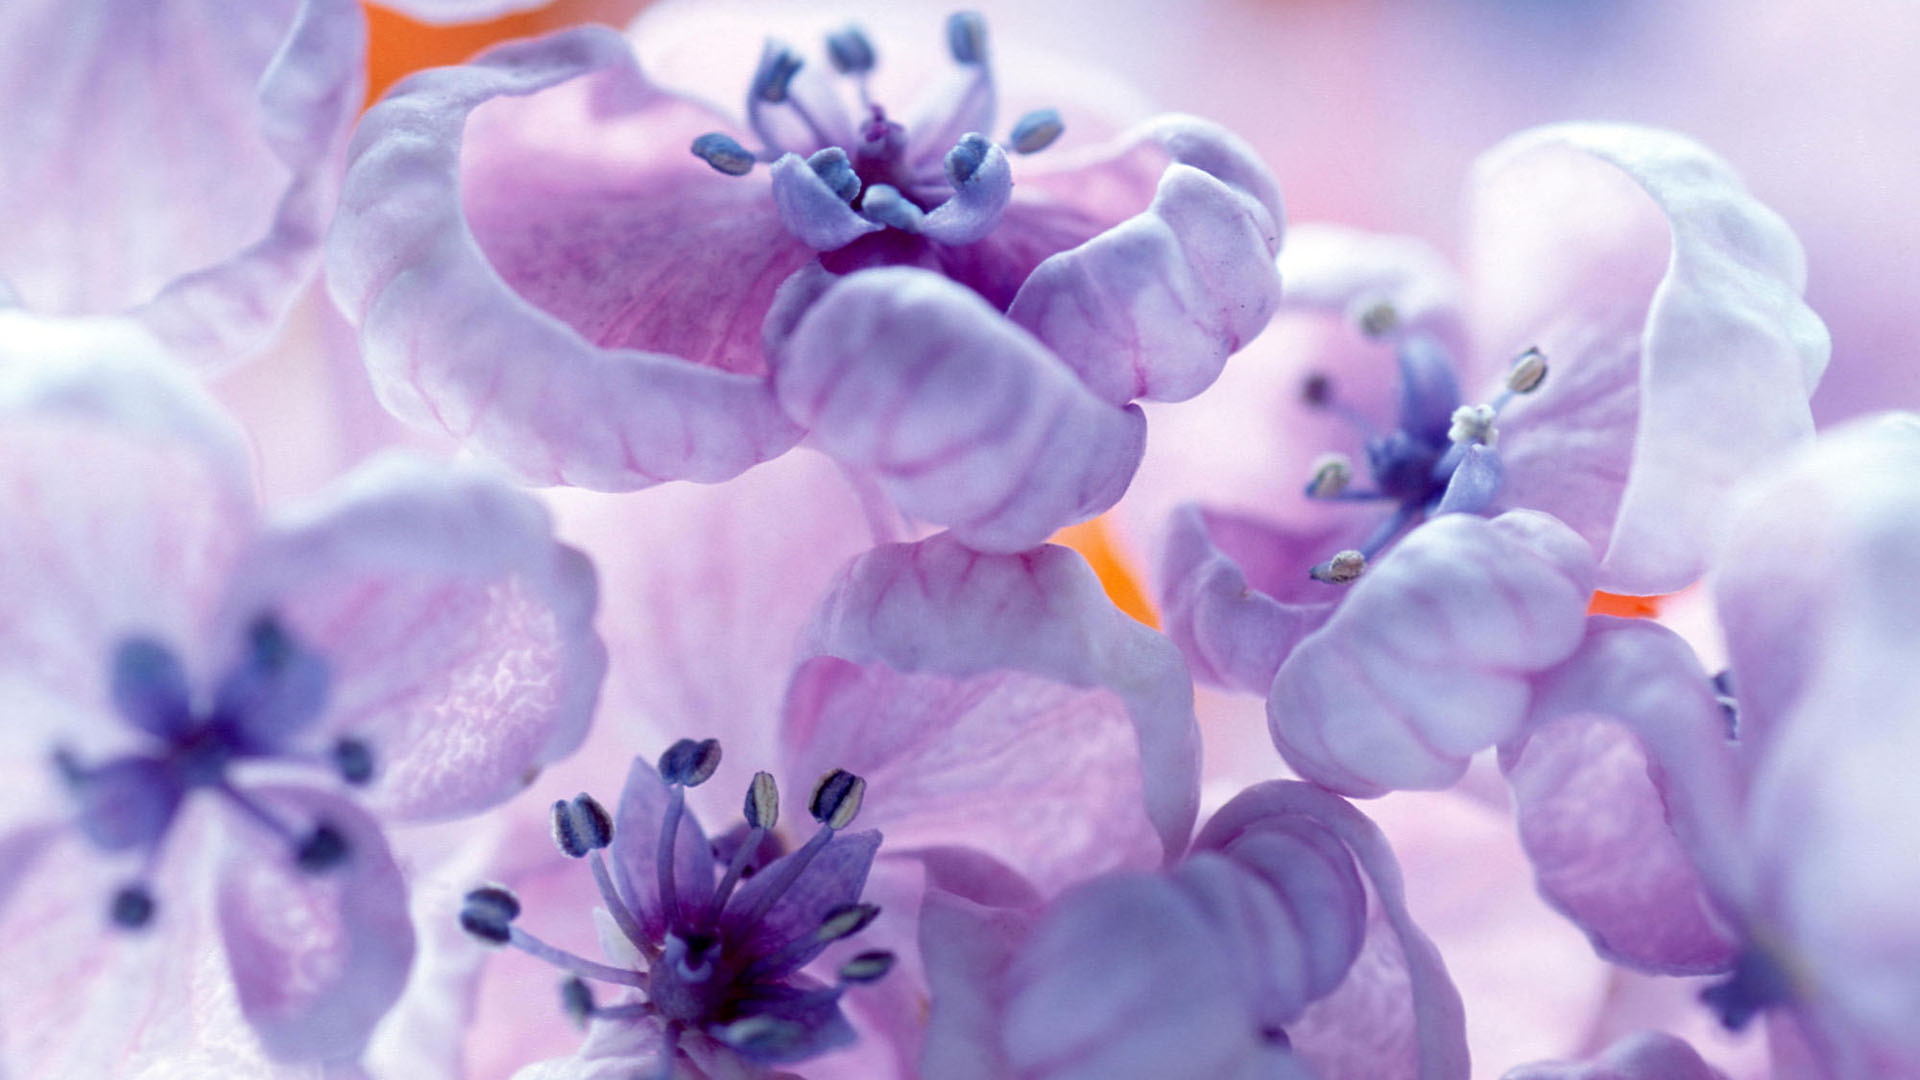 Flowers. Lilac study (30 wallpaper) Смотри Красивые Обои, Wallpaper, Красивые обои на рабочий стол